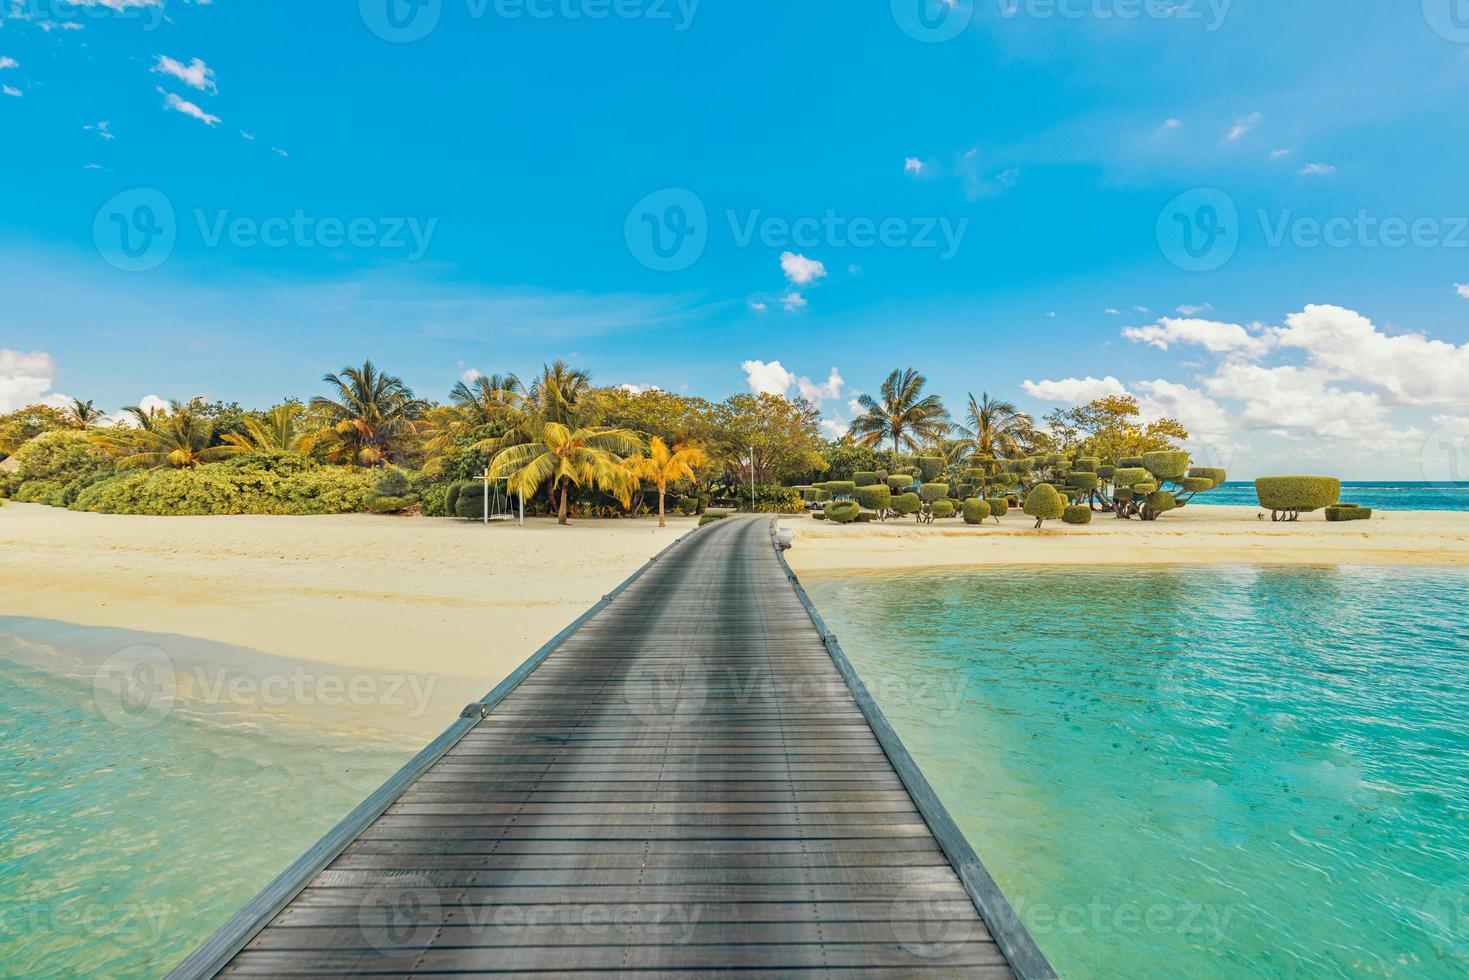 increíble panorama en maldivas. Resort de lujo villas pier seascape con palmeras, arena blanca y cielo azul. hermoso paisaje de verano. fondo de playa tropical para vacaciones. isla del Paraiso foto